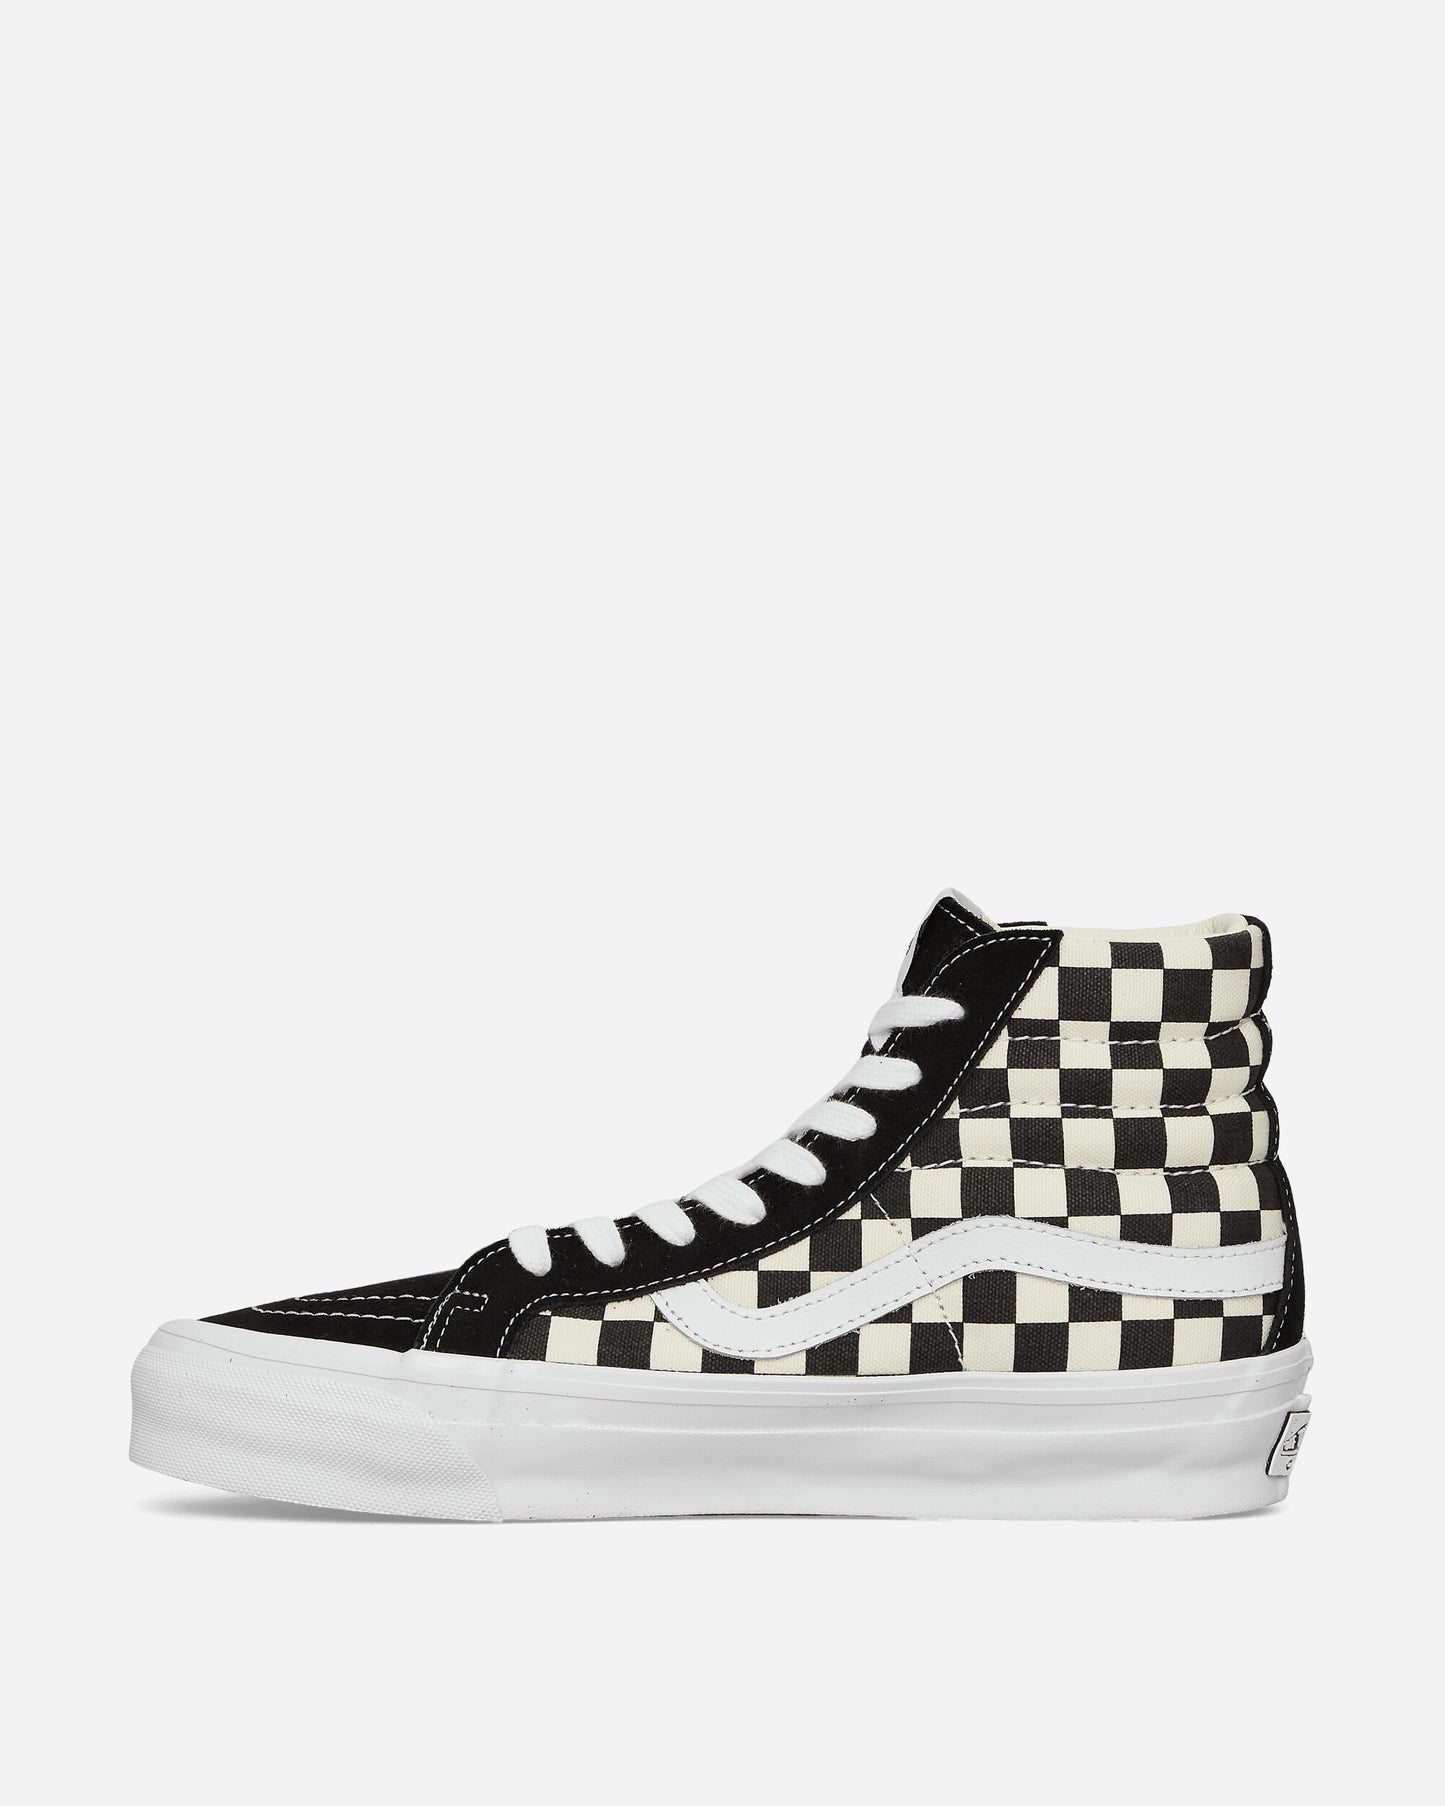 Vans Slip-On Reissue 98 Checkerboard Black/Off White Sneakers High VN000CR02BO1